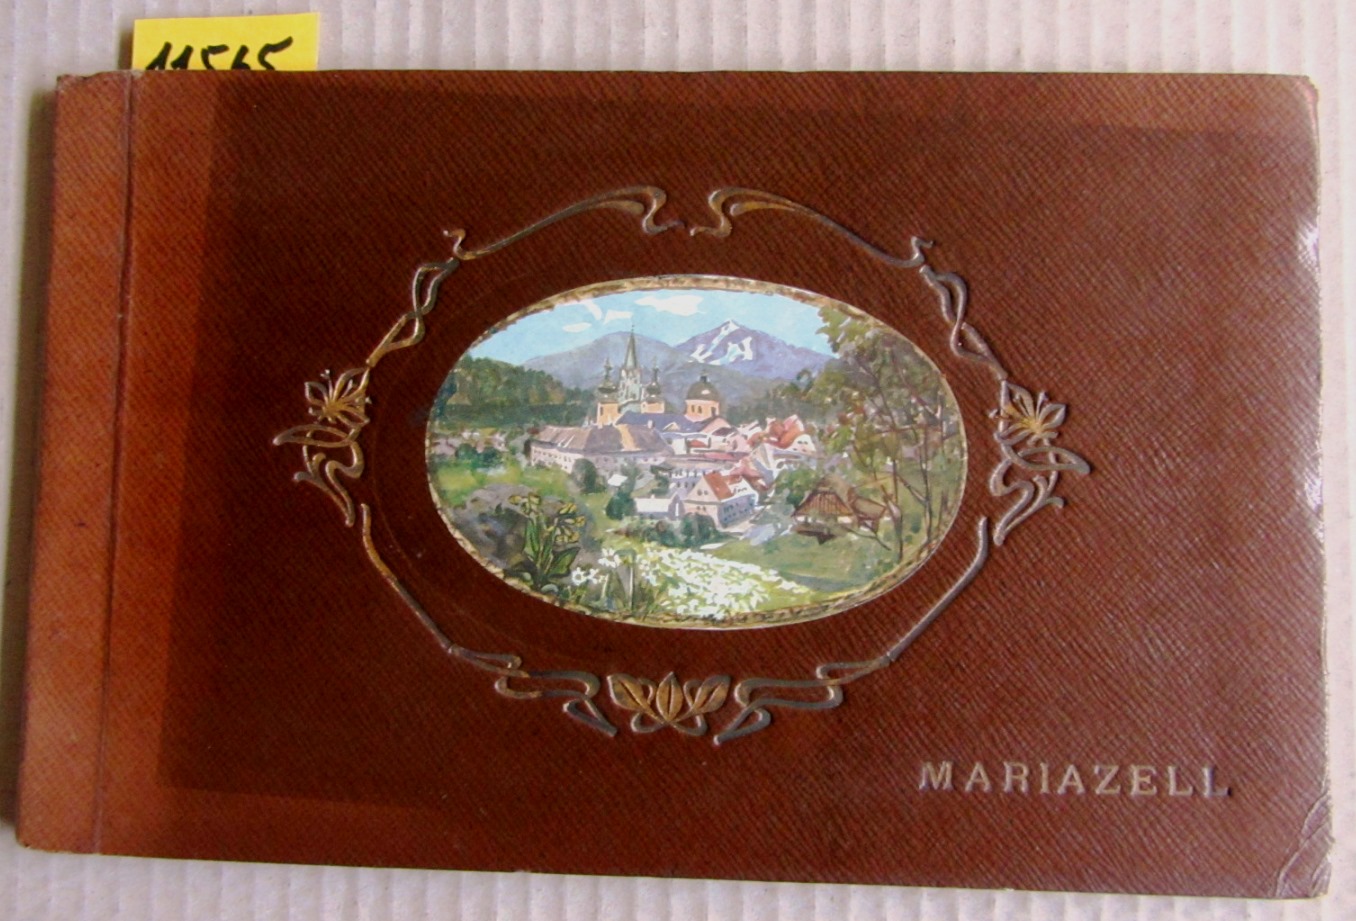   Mariazell. Album mit 20 auf Karton gedruckten photographischen Aufnahmen (braun). 